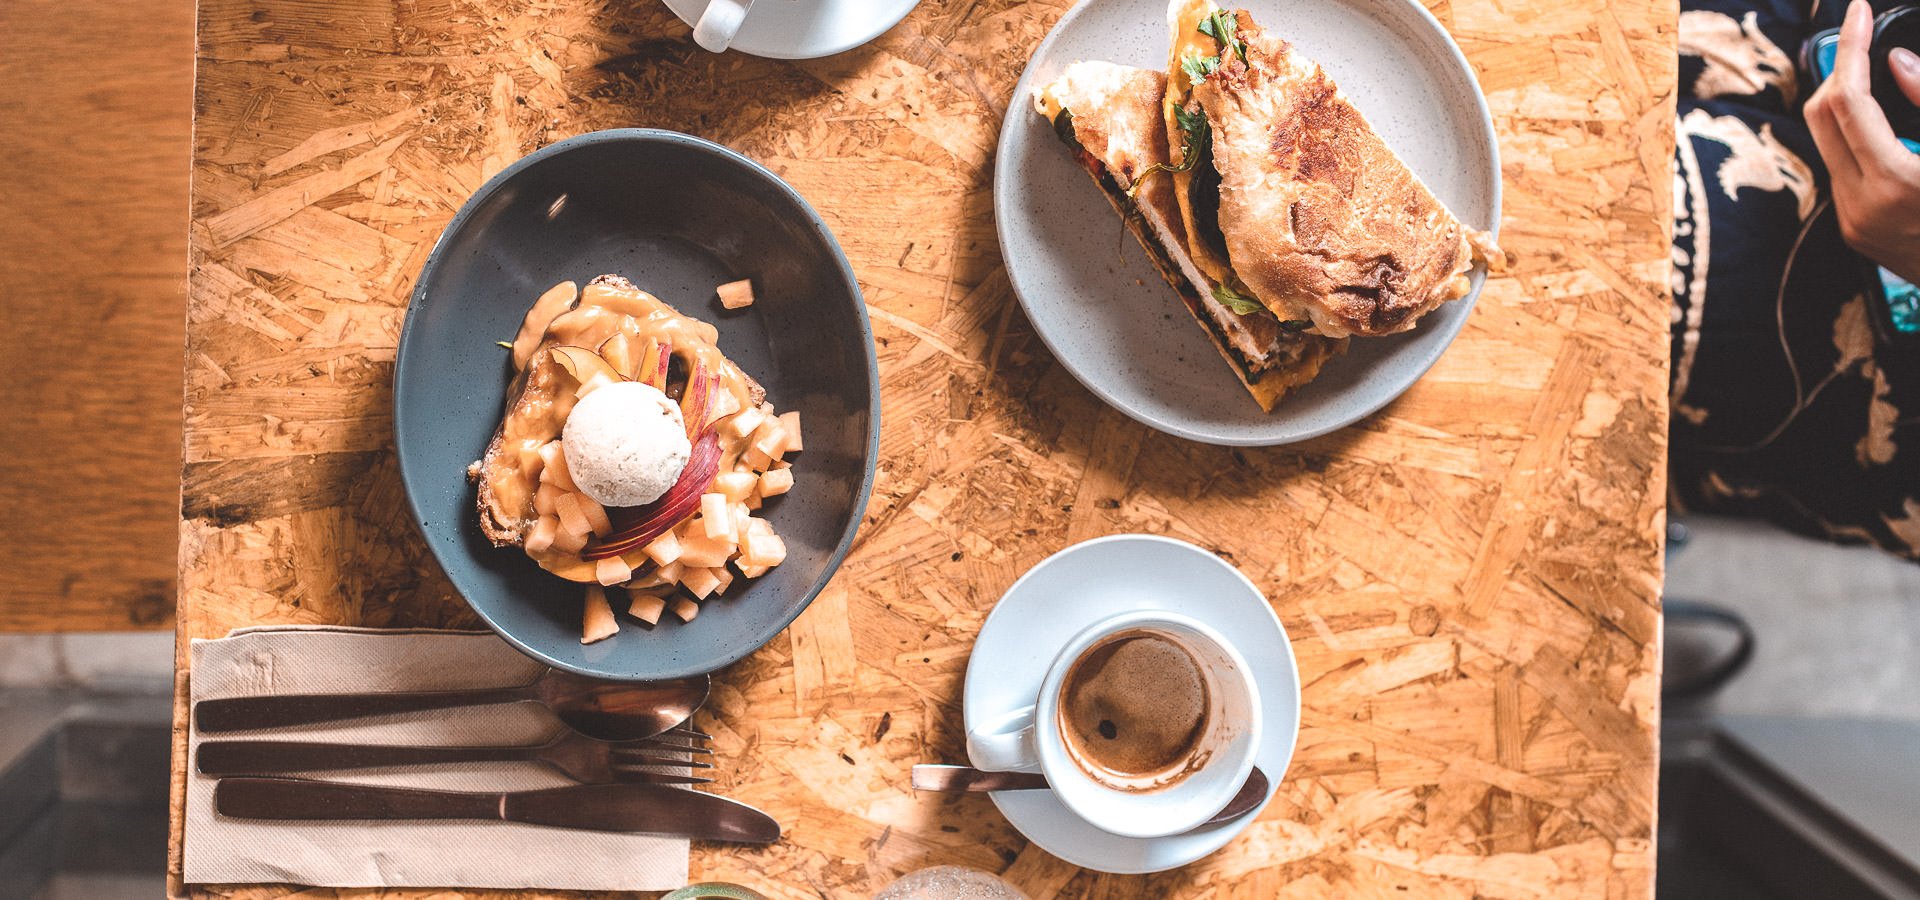 Best Brunch Brisbane: 13 Delicious Breakfast Spots You Must Try | hong kong instagram 5